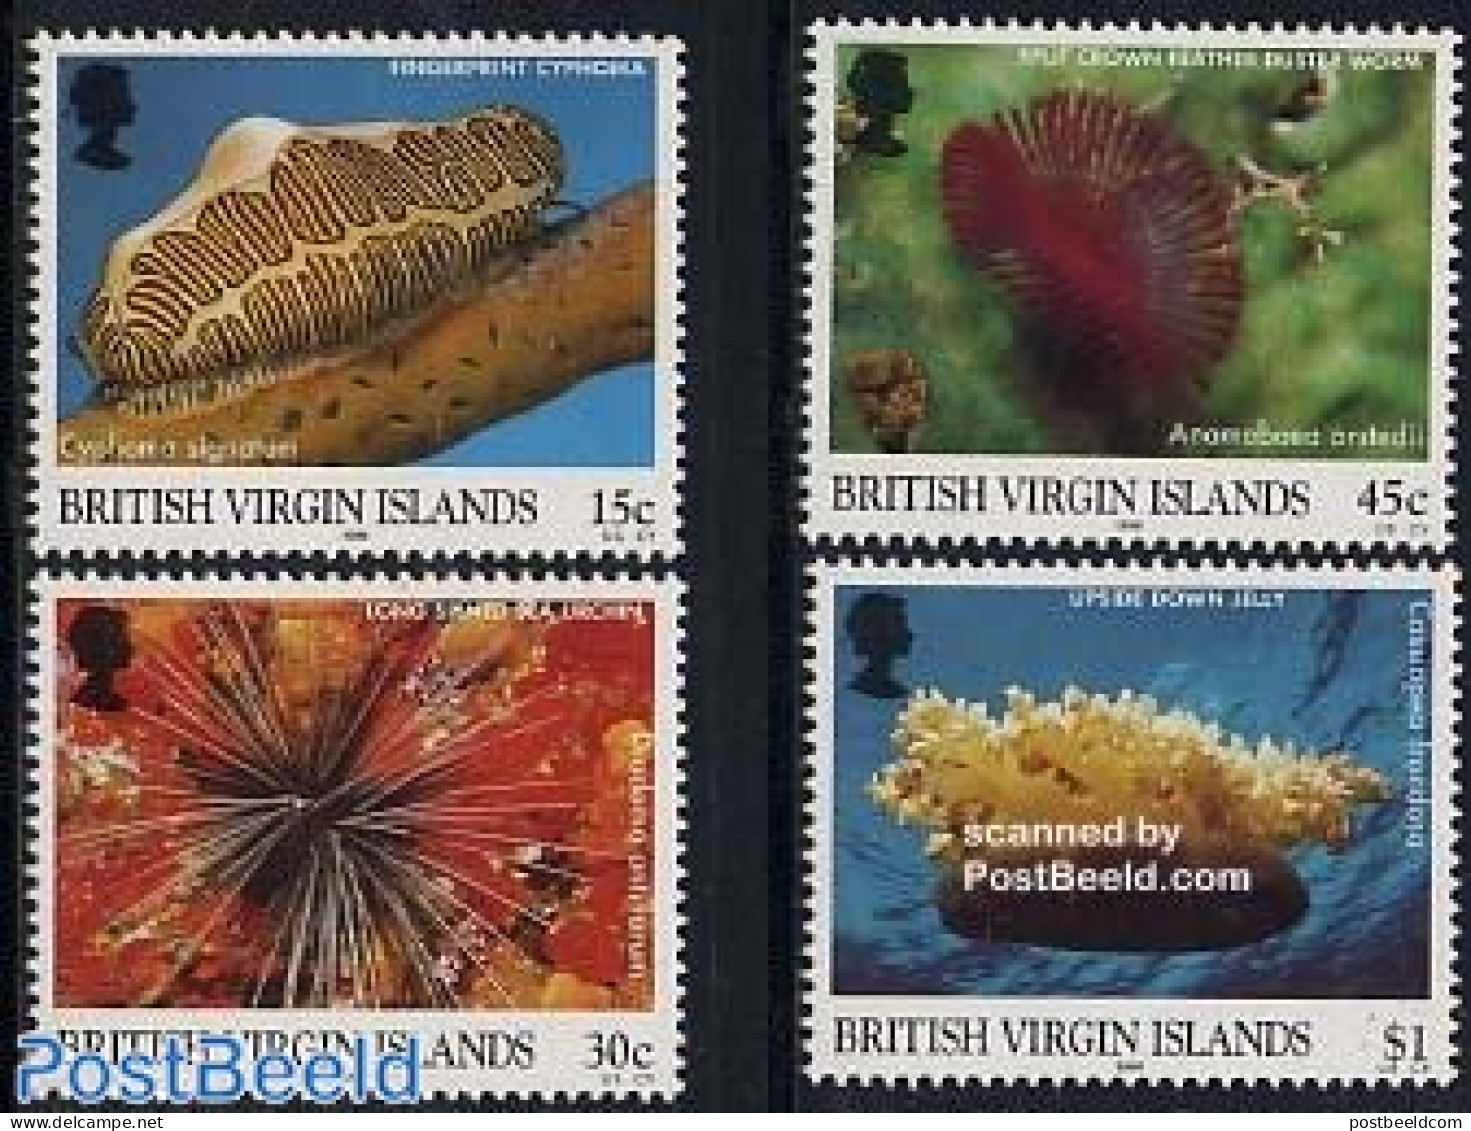 Virgin Islands 1998 Marine Life 4v, Mint NH, Nature - Shells & Crustaceans - Maritiem Leven